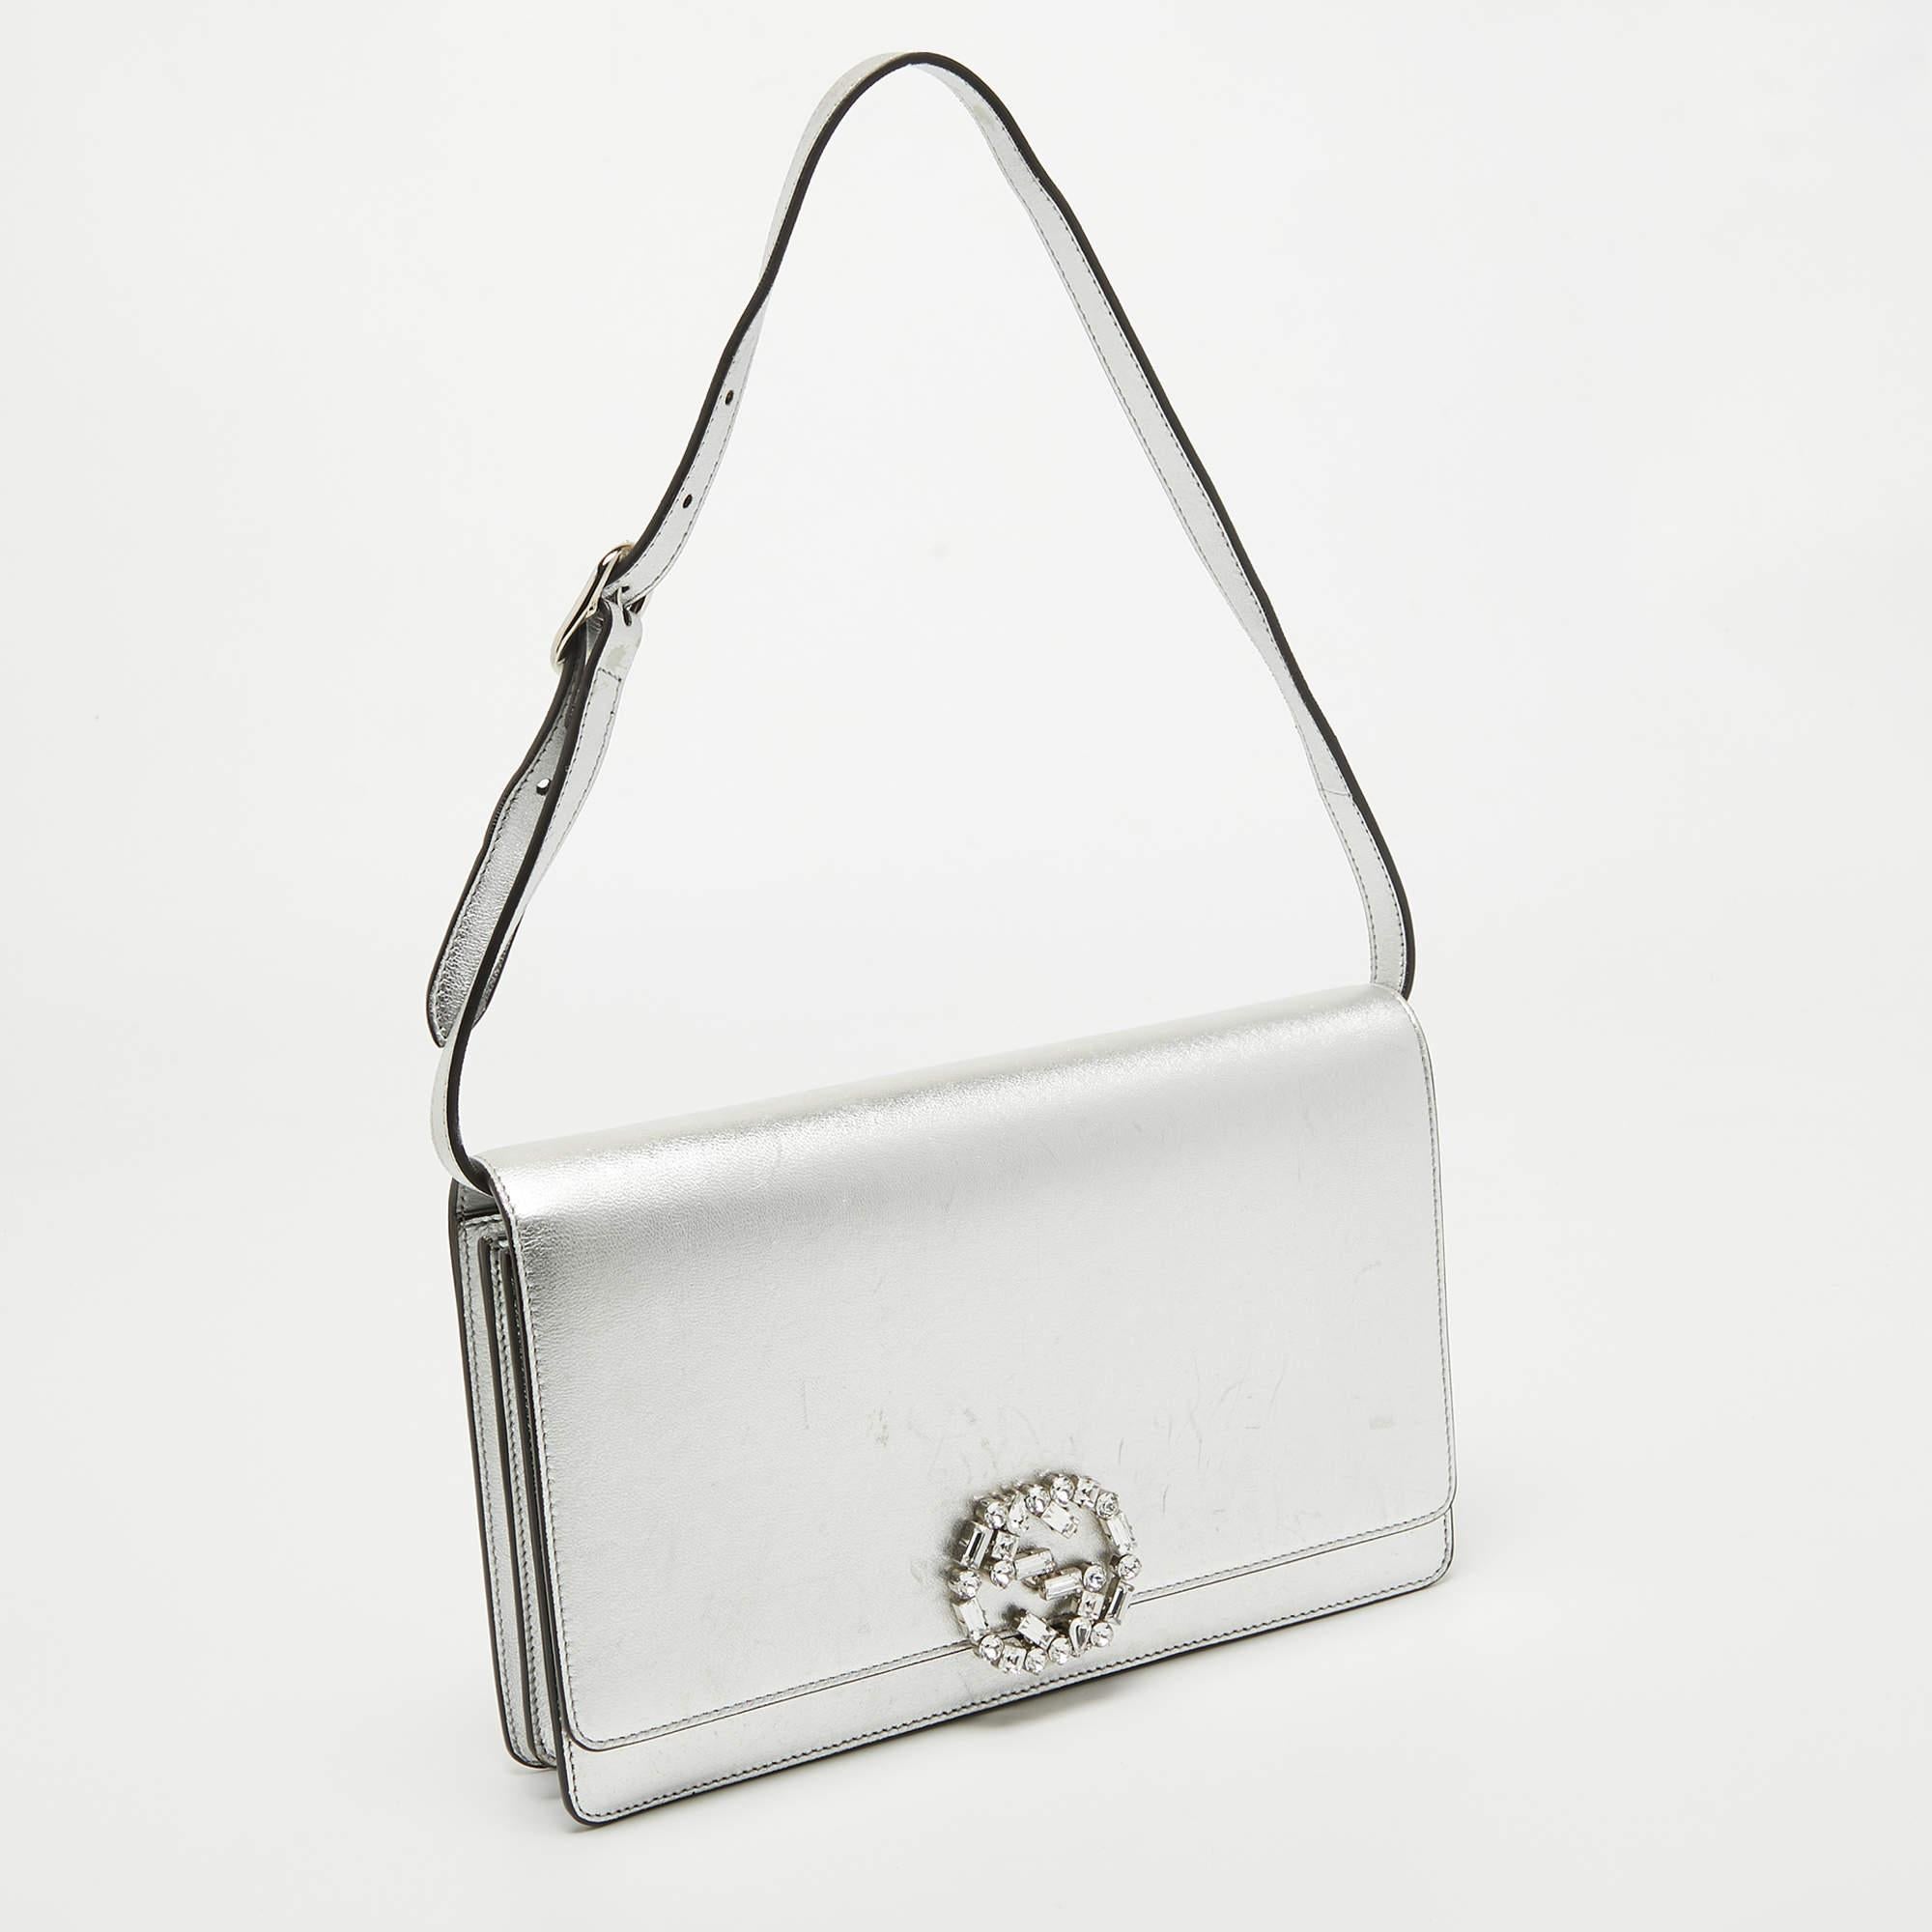 Gucci Silver Leather Crystal Embellished Broadway Shoulder Bag 2